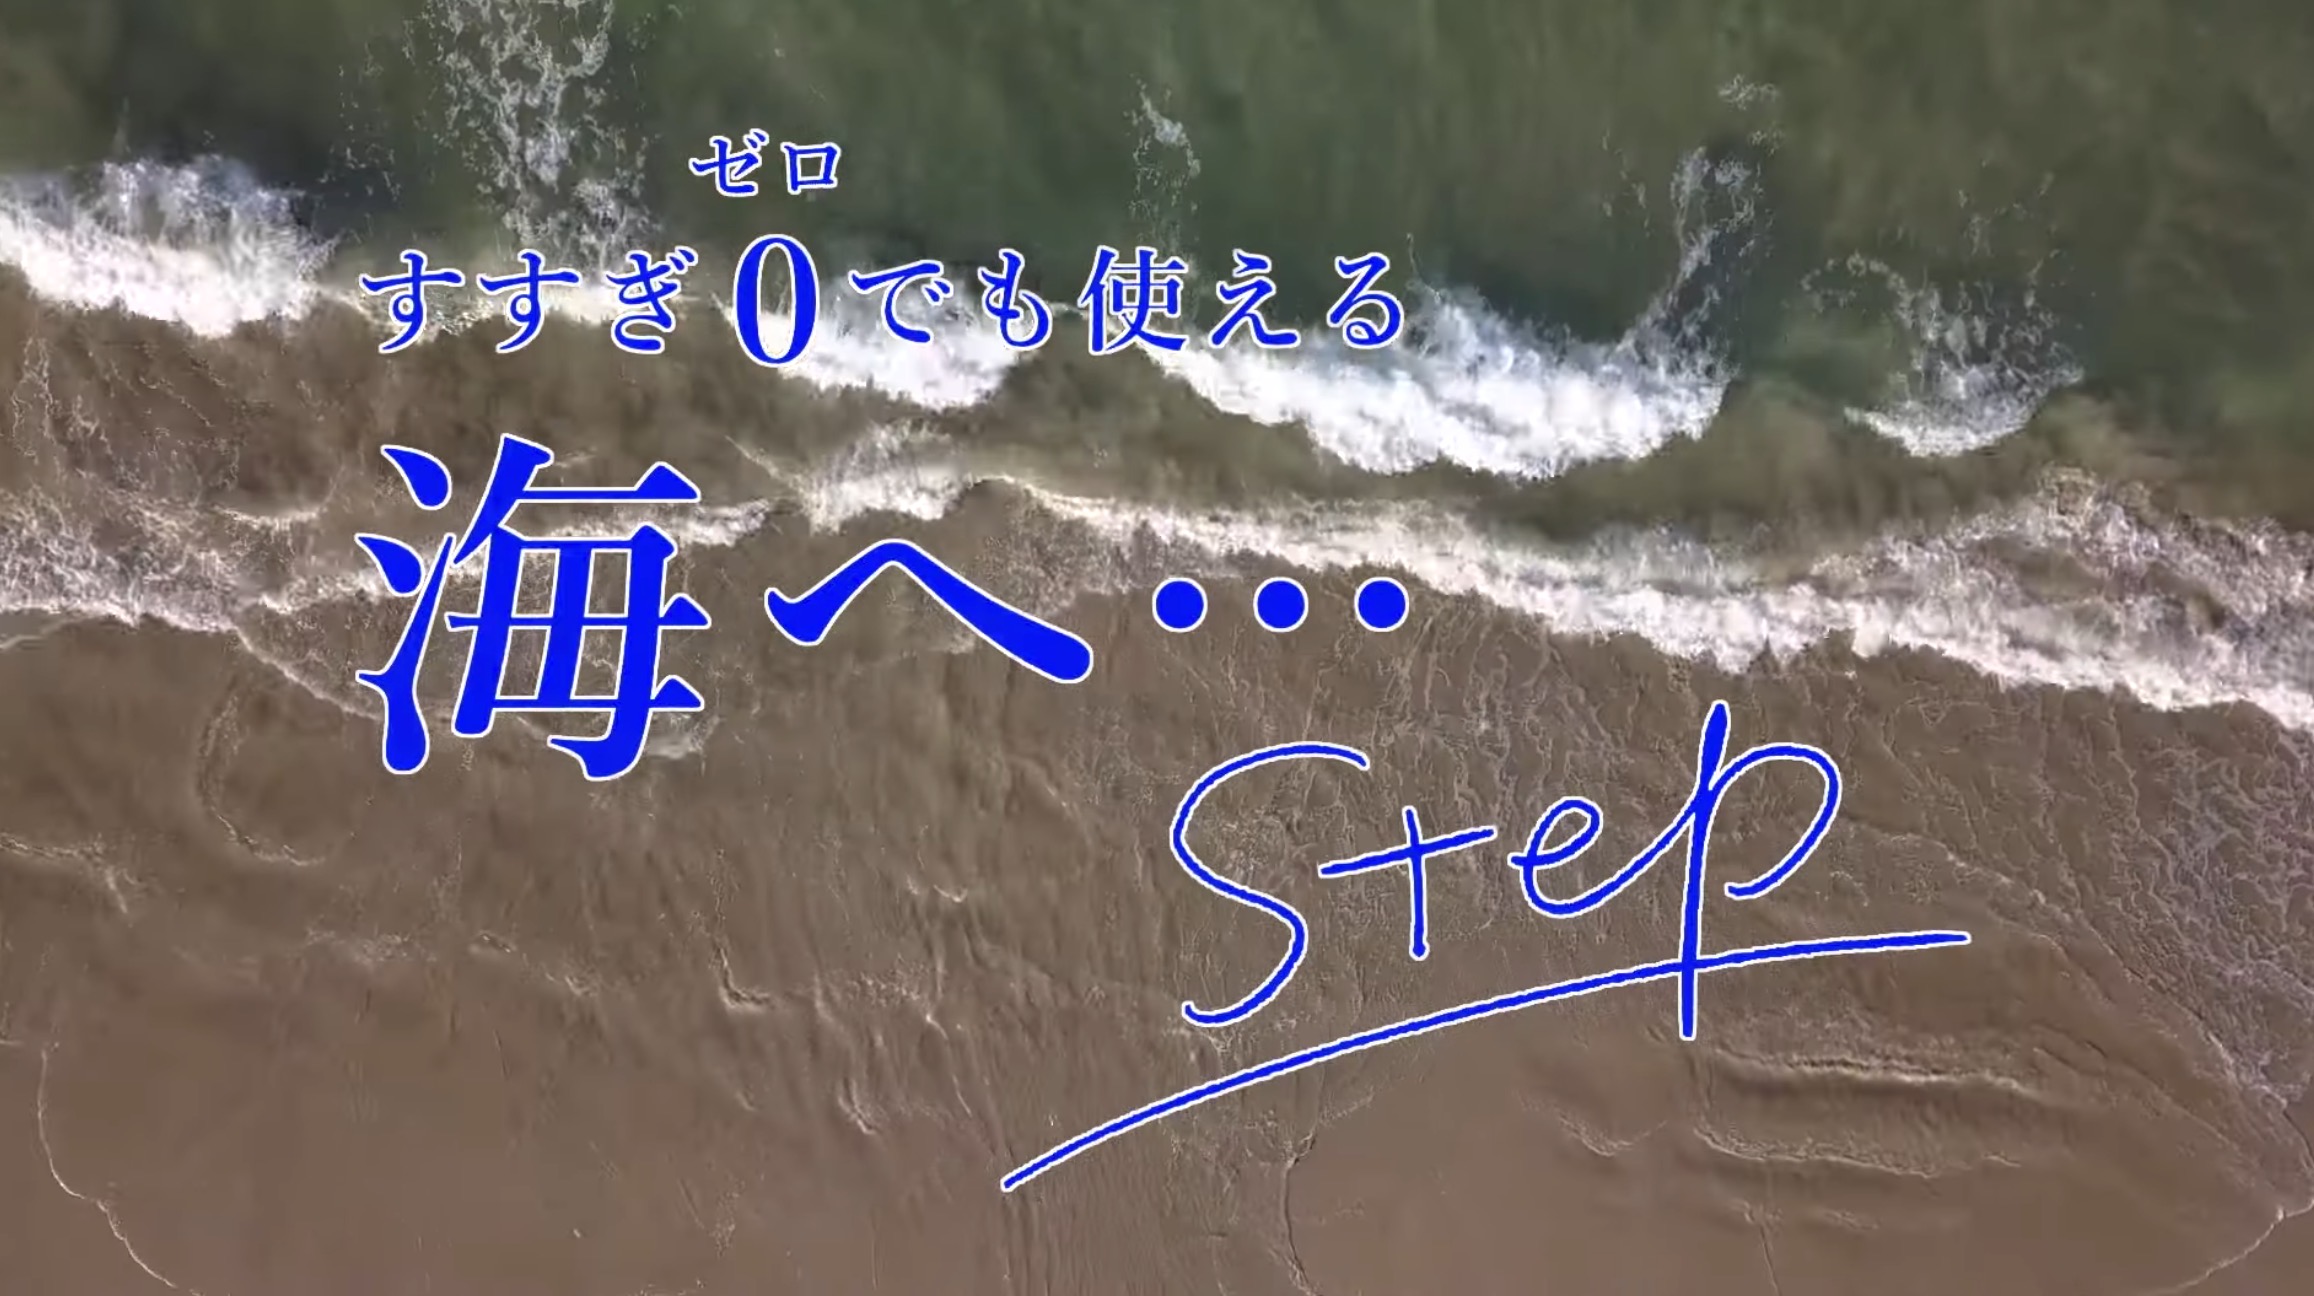 海へ…Step 新登場！